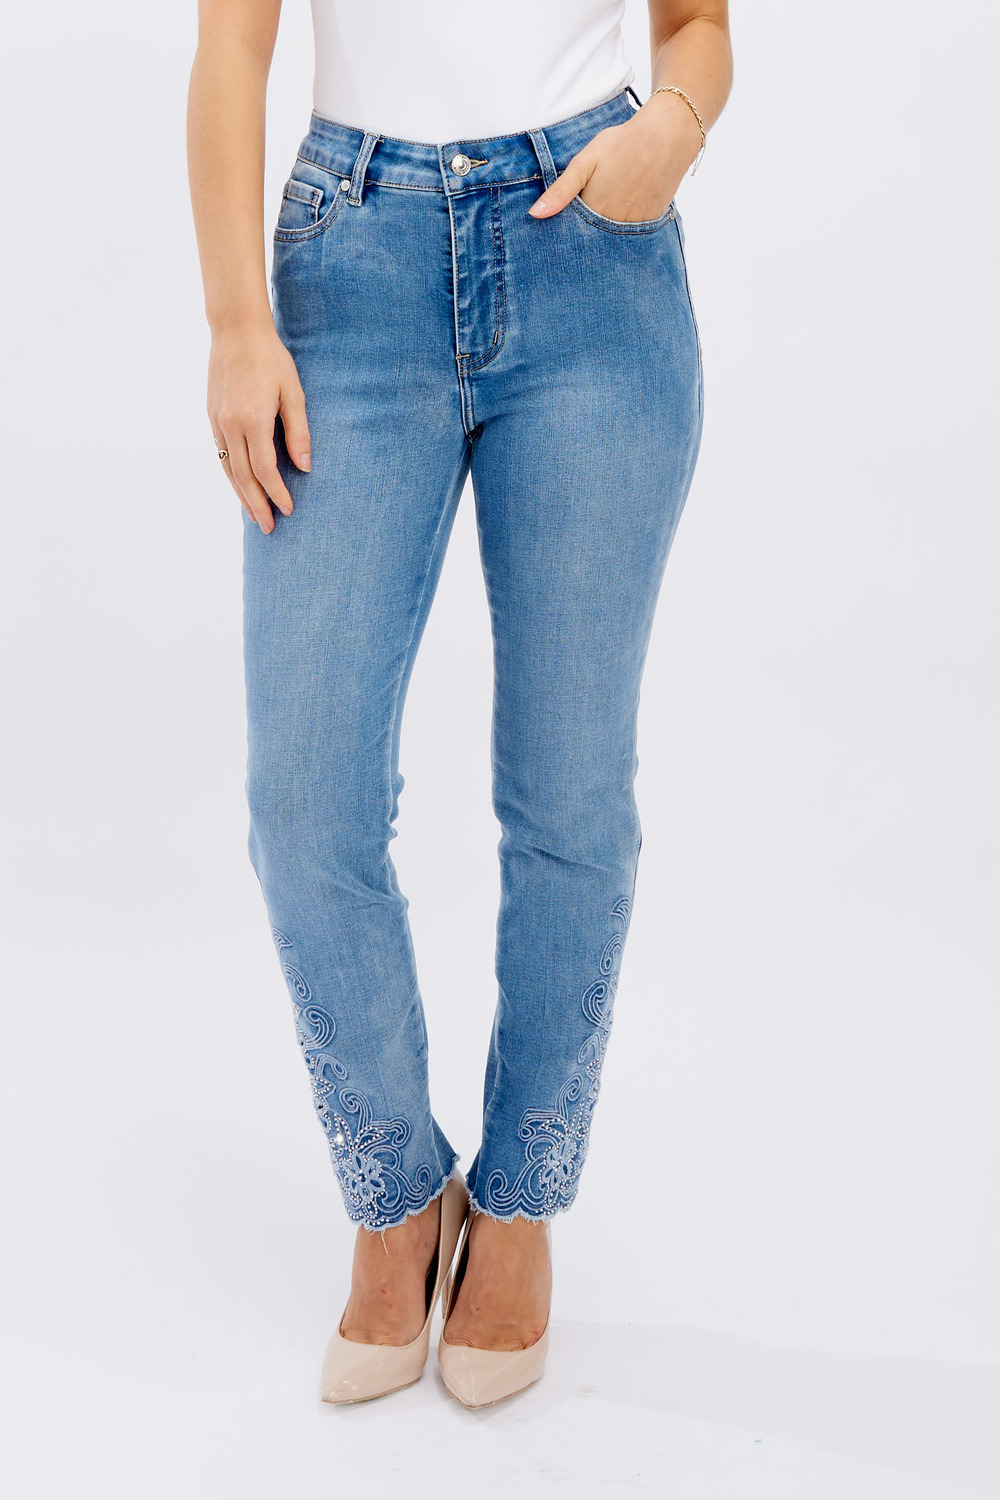 jeans avec détails en dentelle modèle 246220u. Bleu